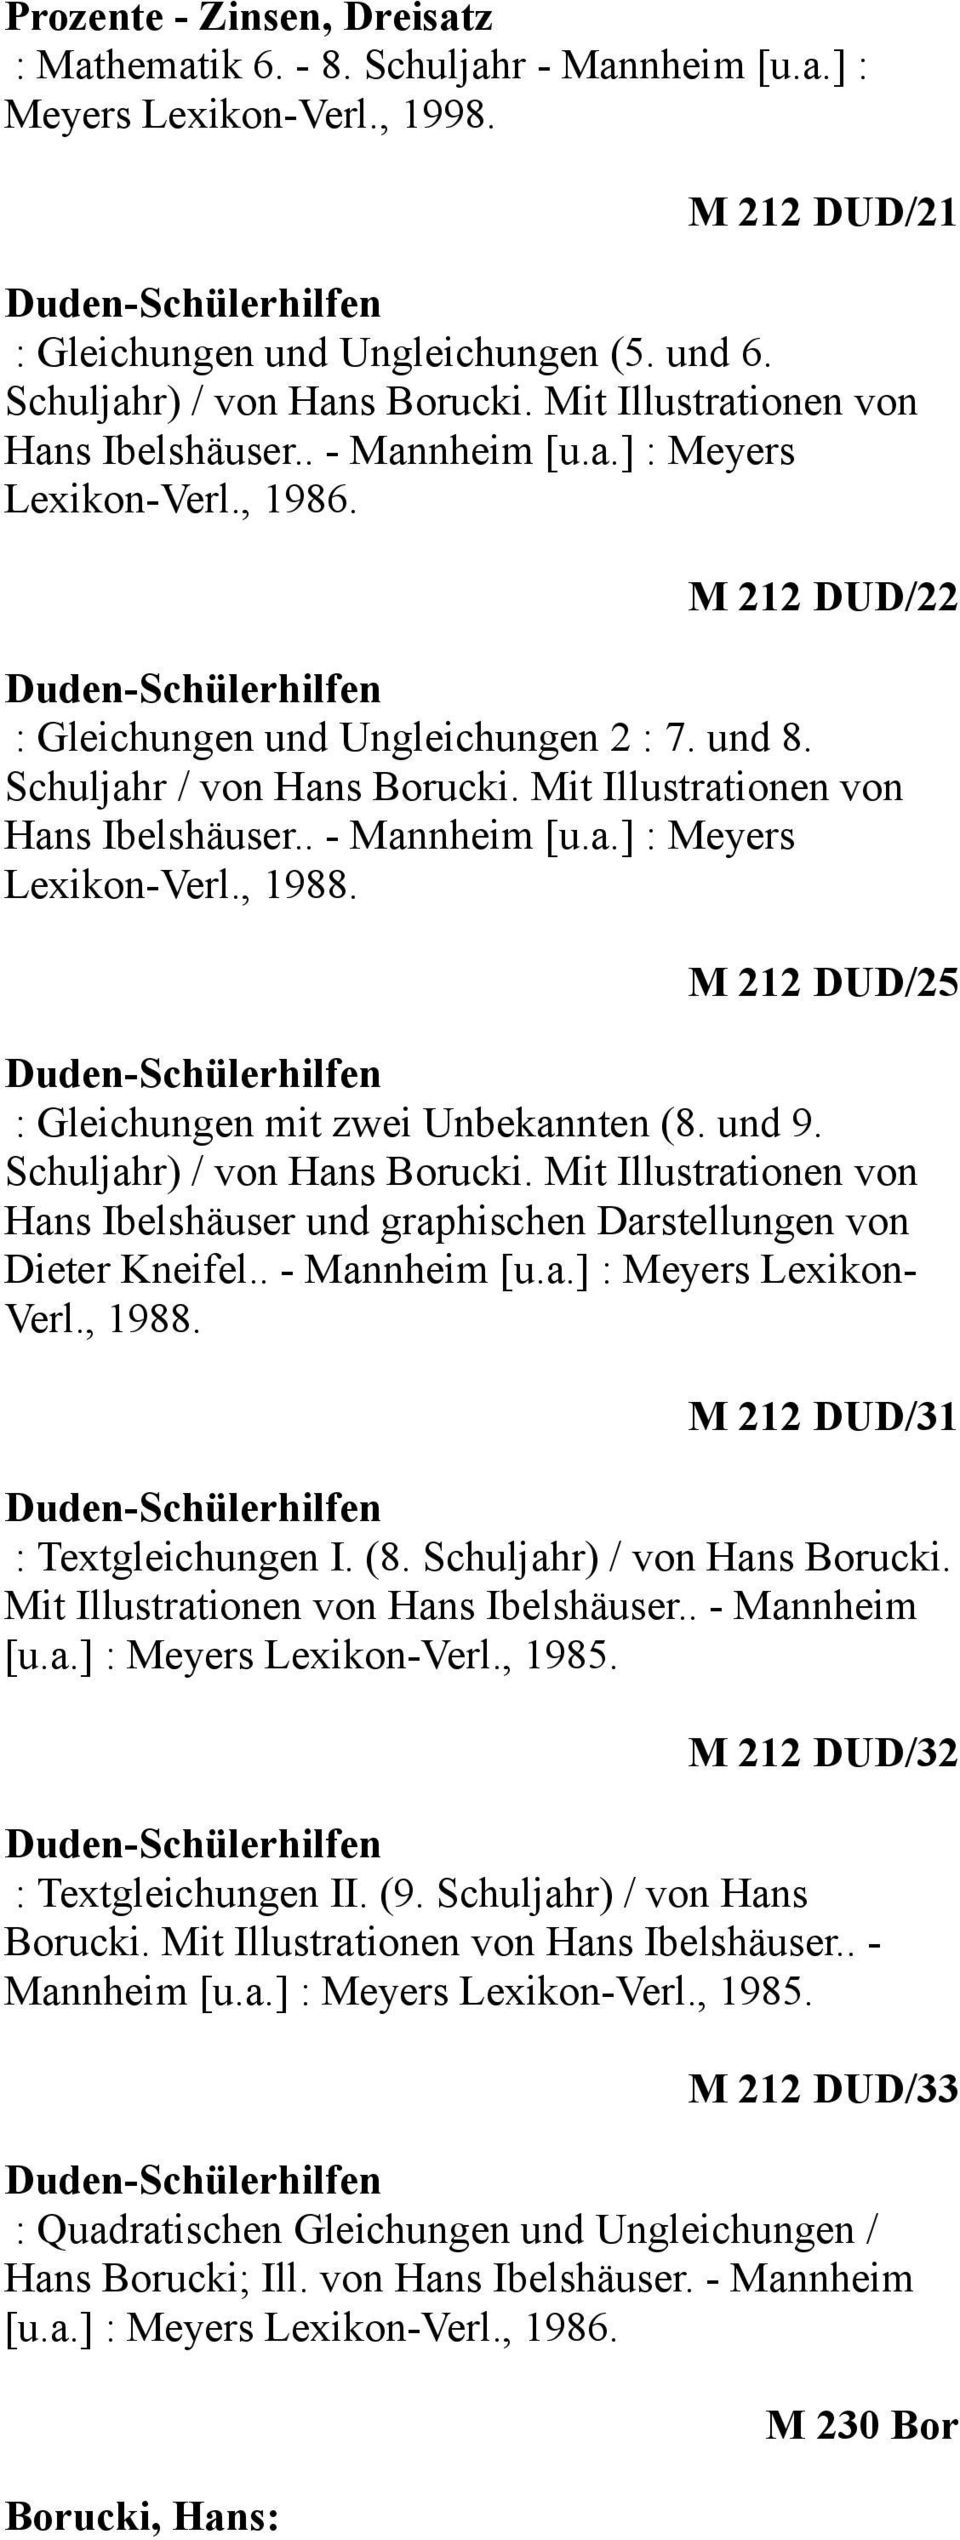 Mit Illustrationen von Hans Ibelshäuser.. - Mannheim [u.a.] : Meyers Lexikon-Verl., 1988. M 212 DUD/25 : Gleichungen mit zwei Unbekannten (8. und 9. Schuljahr) / von Hans Borucki.